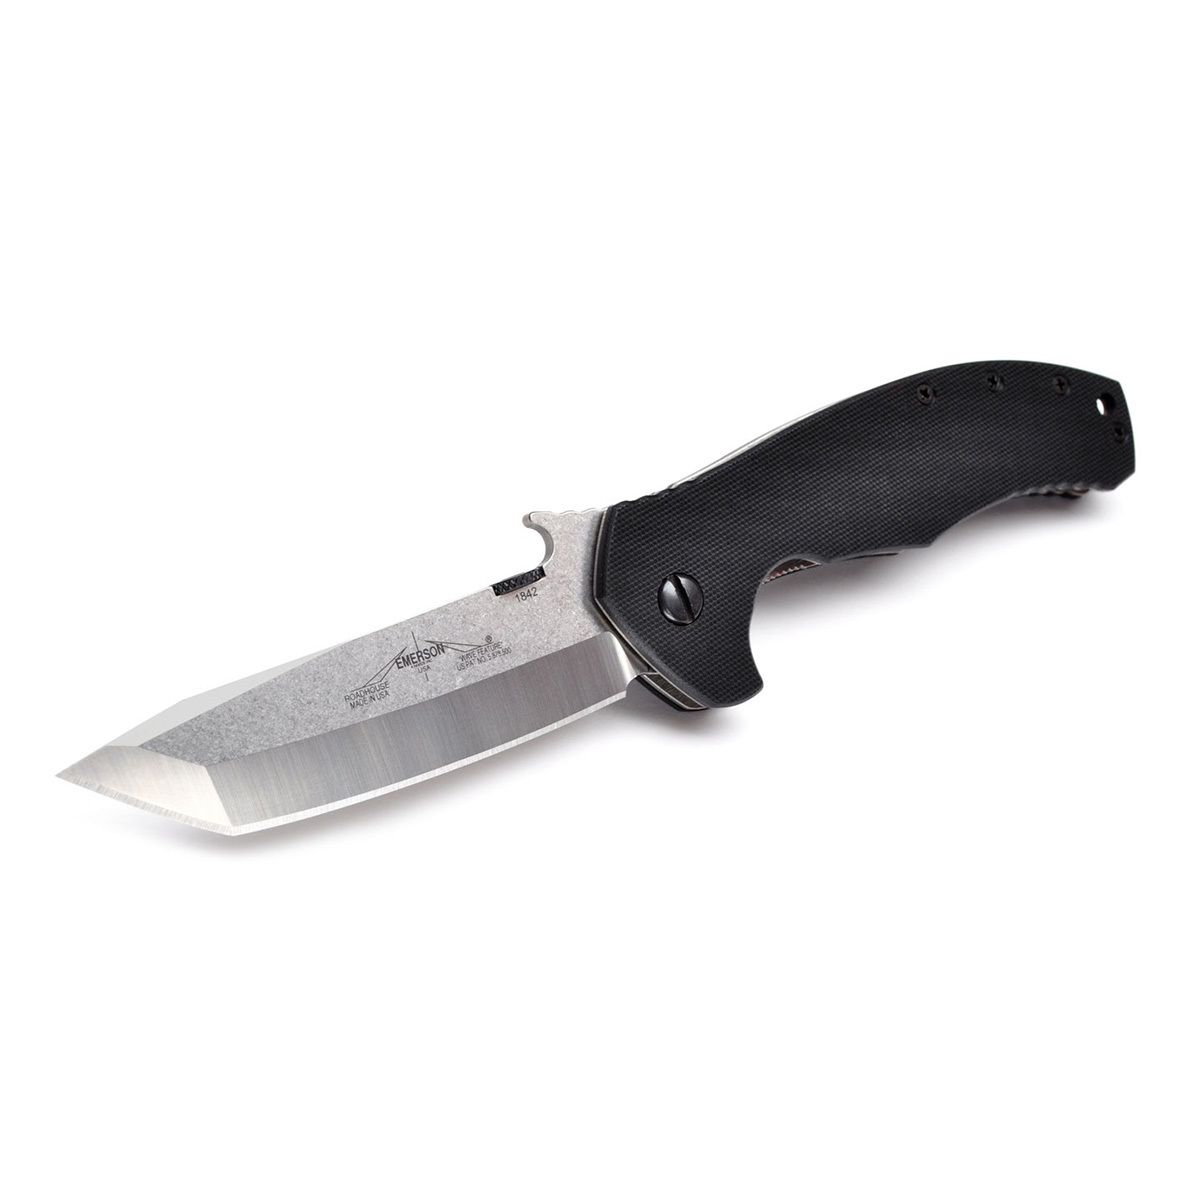 Складной нож Roadhouse SF Emerson, сталь 154CM, рукоять G-10/титан